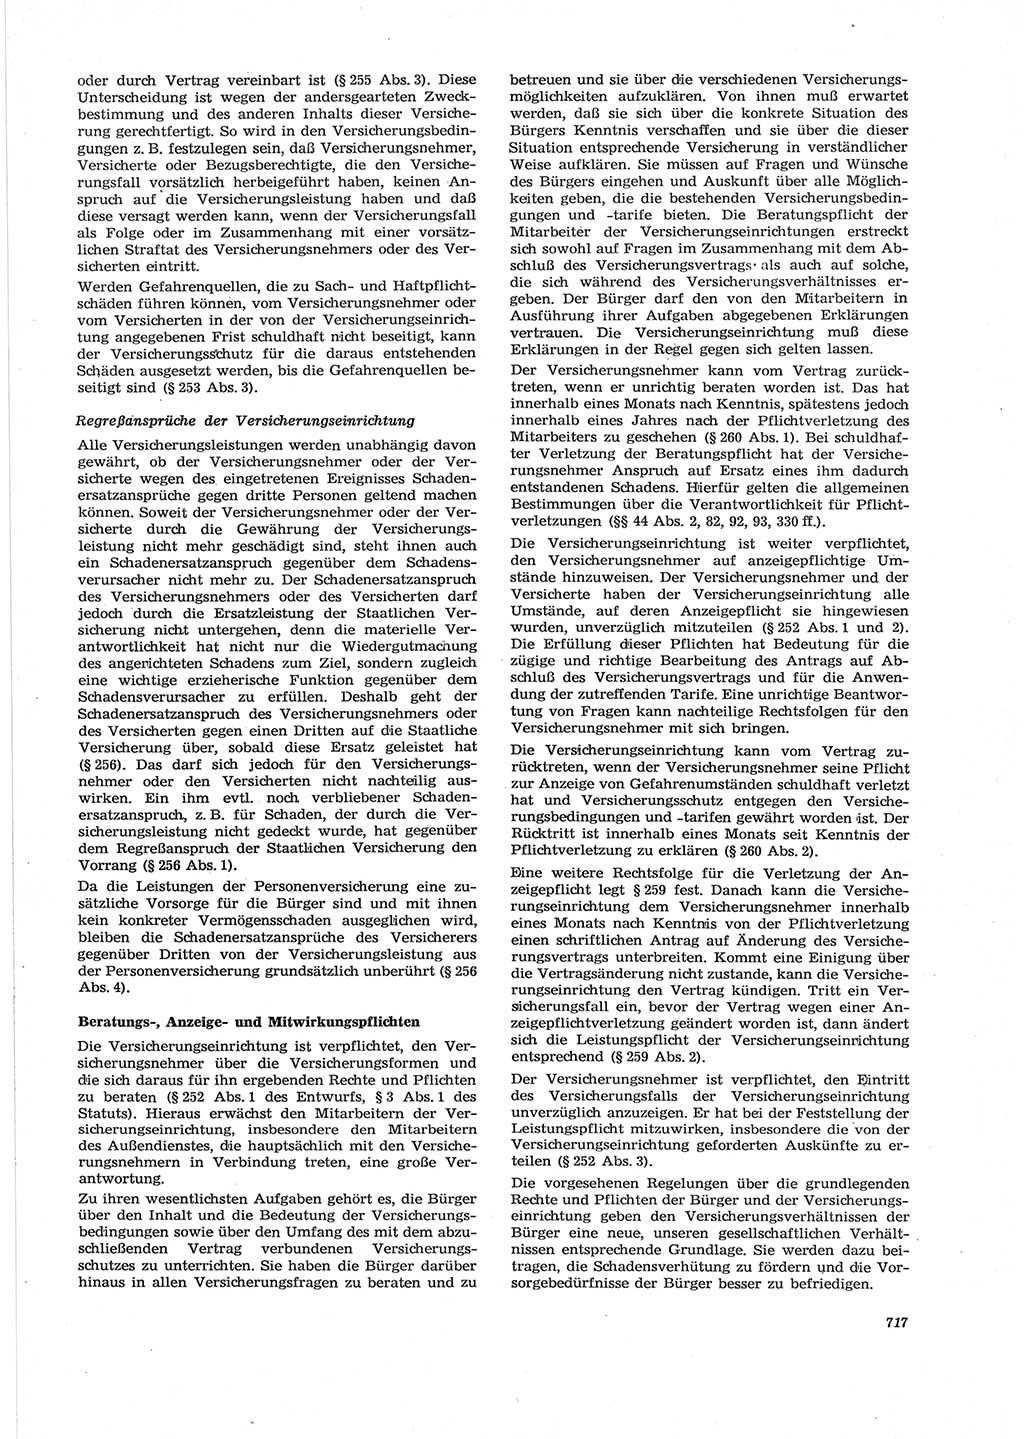 Neue Justiz (NJ), Zeitschrift für Recht und Rechtswissenschaft [Deutsche Demokratische Republik (DDR)], 28. Jahrgang 1974, Seite 717 (NJ DDR 1974, S. 717)